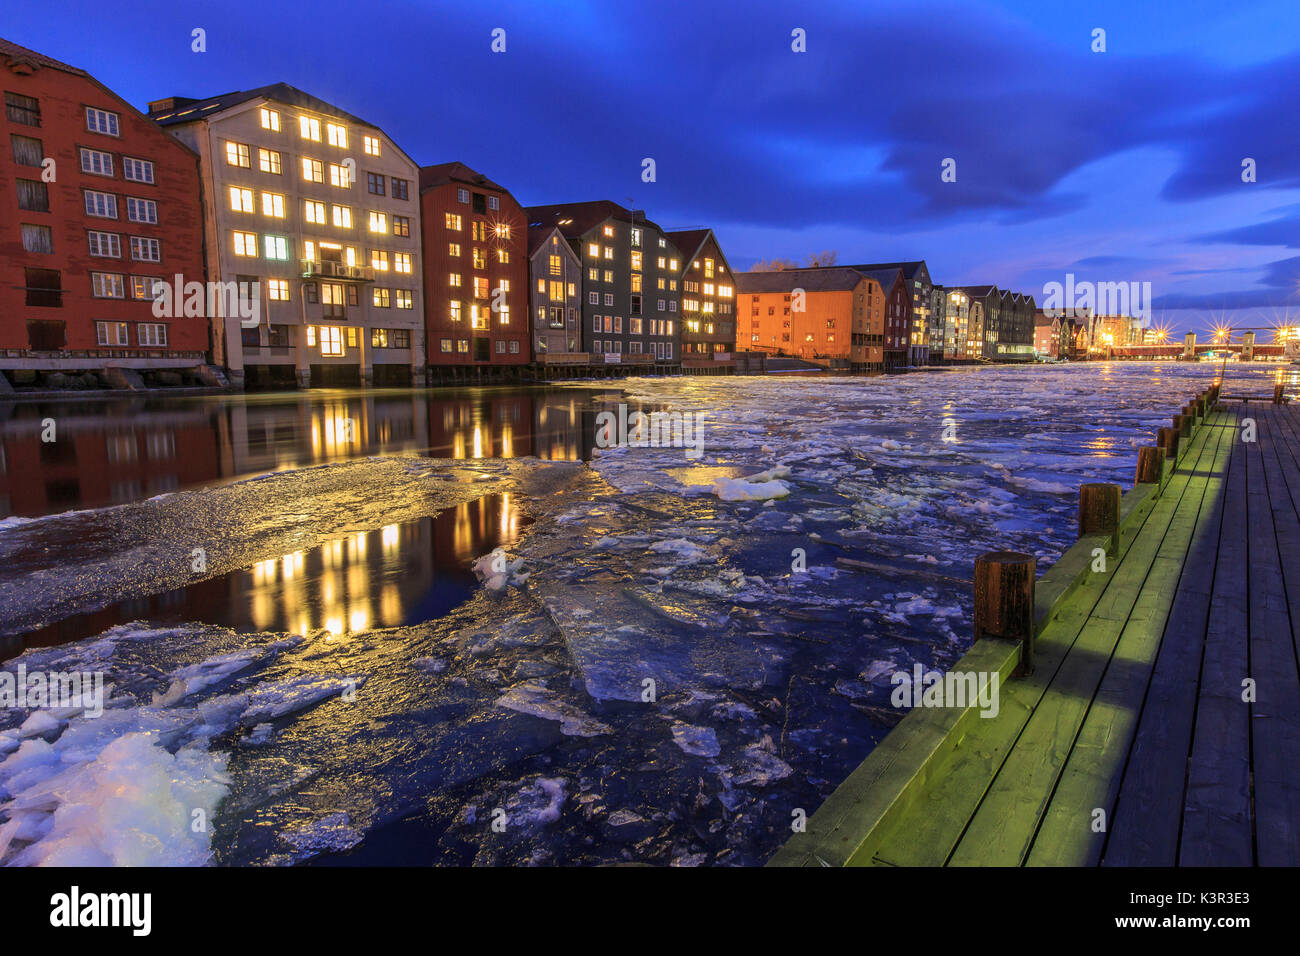 Maisons colorées se reflètent dans la rivière Nidelva Bakklandet Trondheim Norvège Europe Banque D'Images